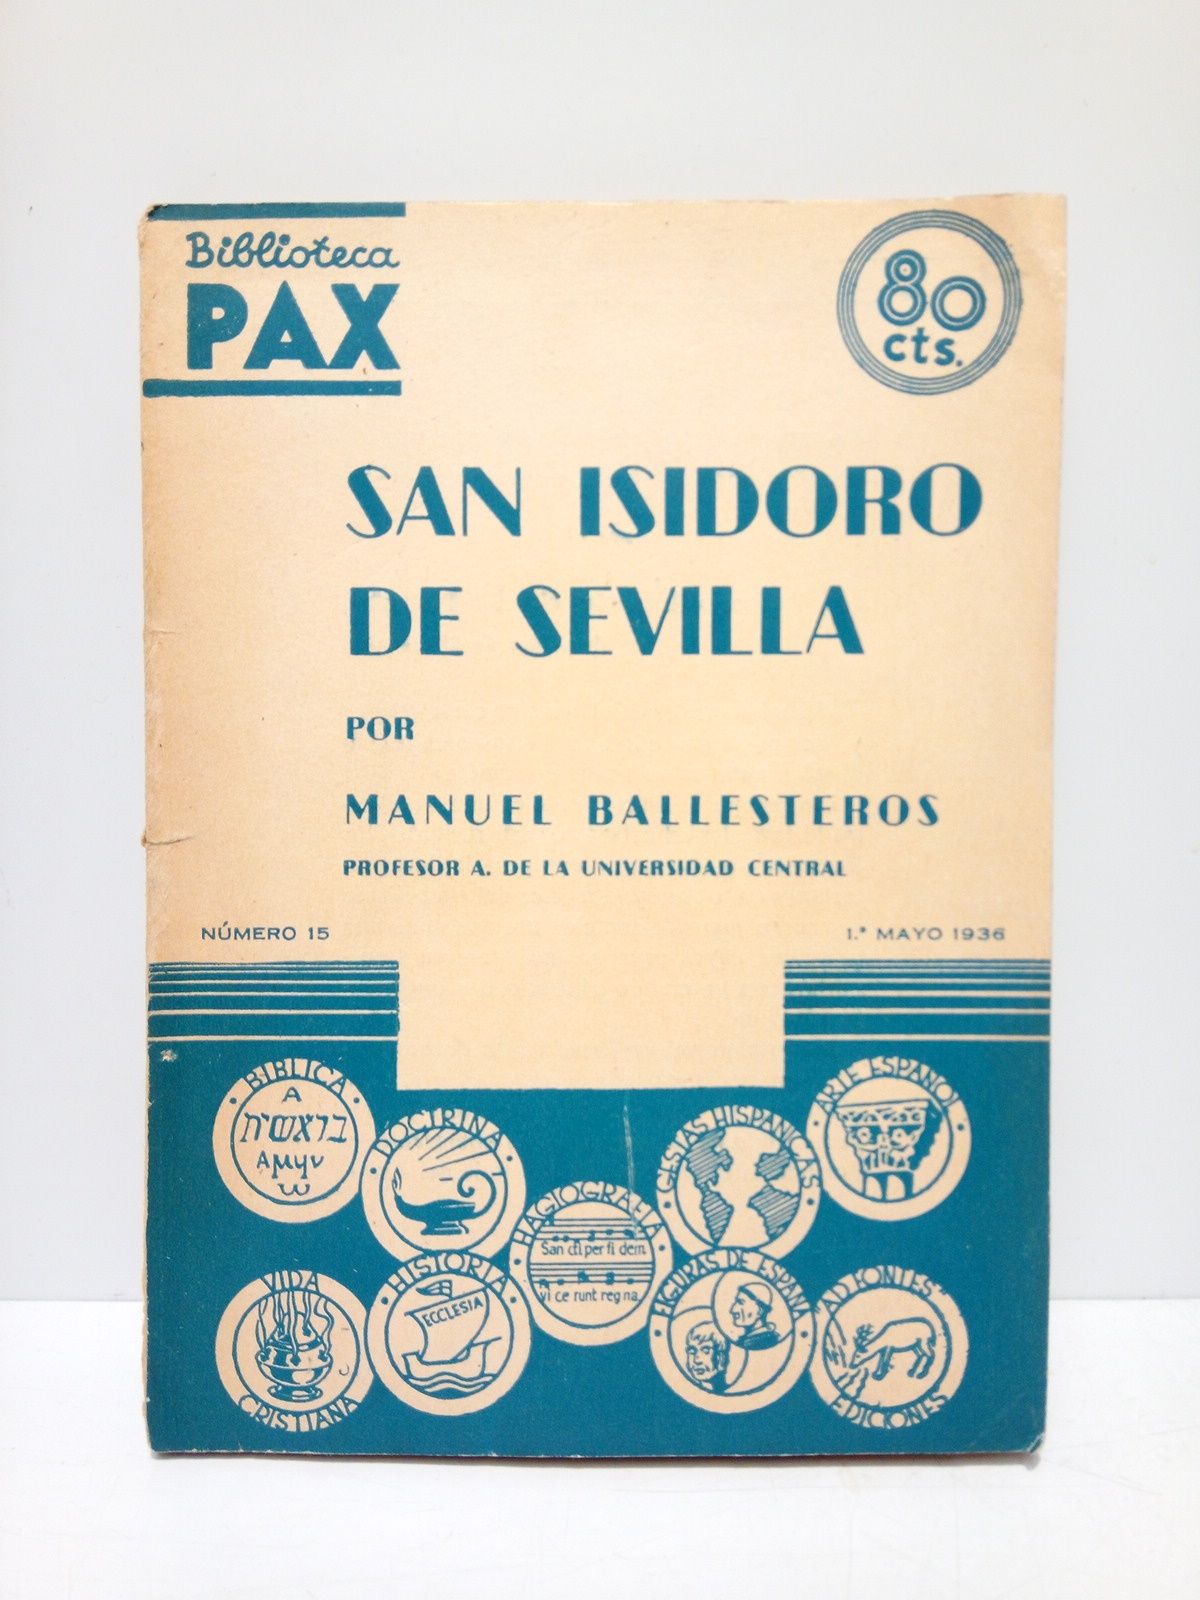 BALLESTEROS GAIBROIS, Manuel - San Isidoro de Sevilla